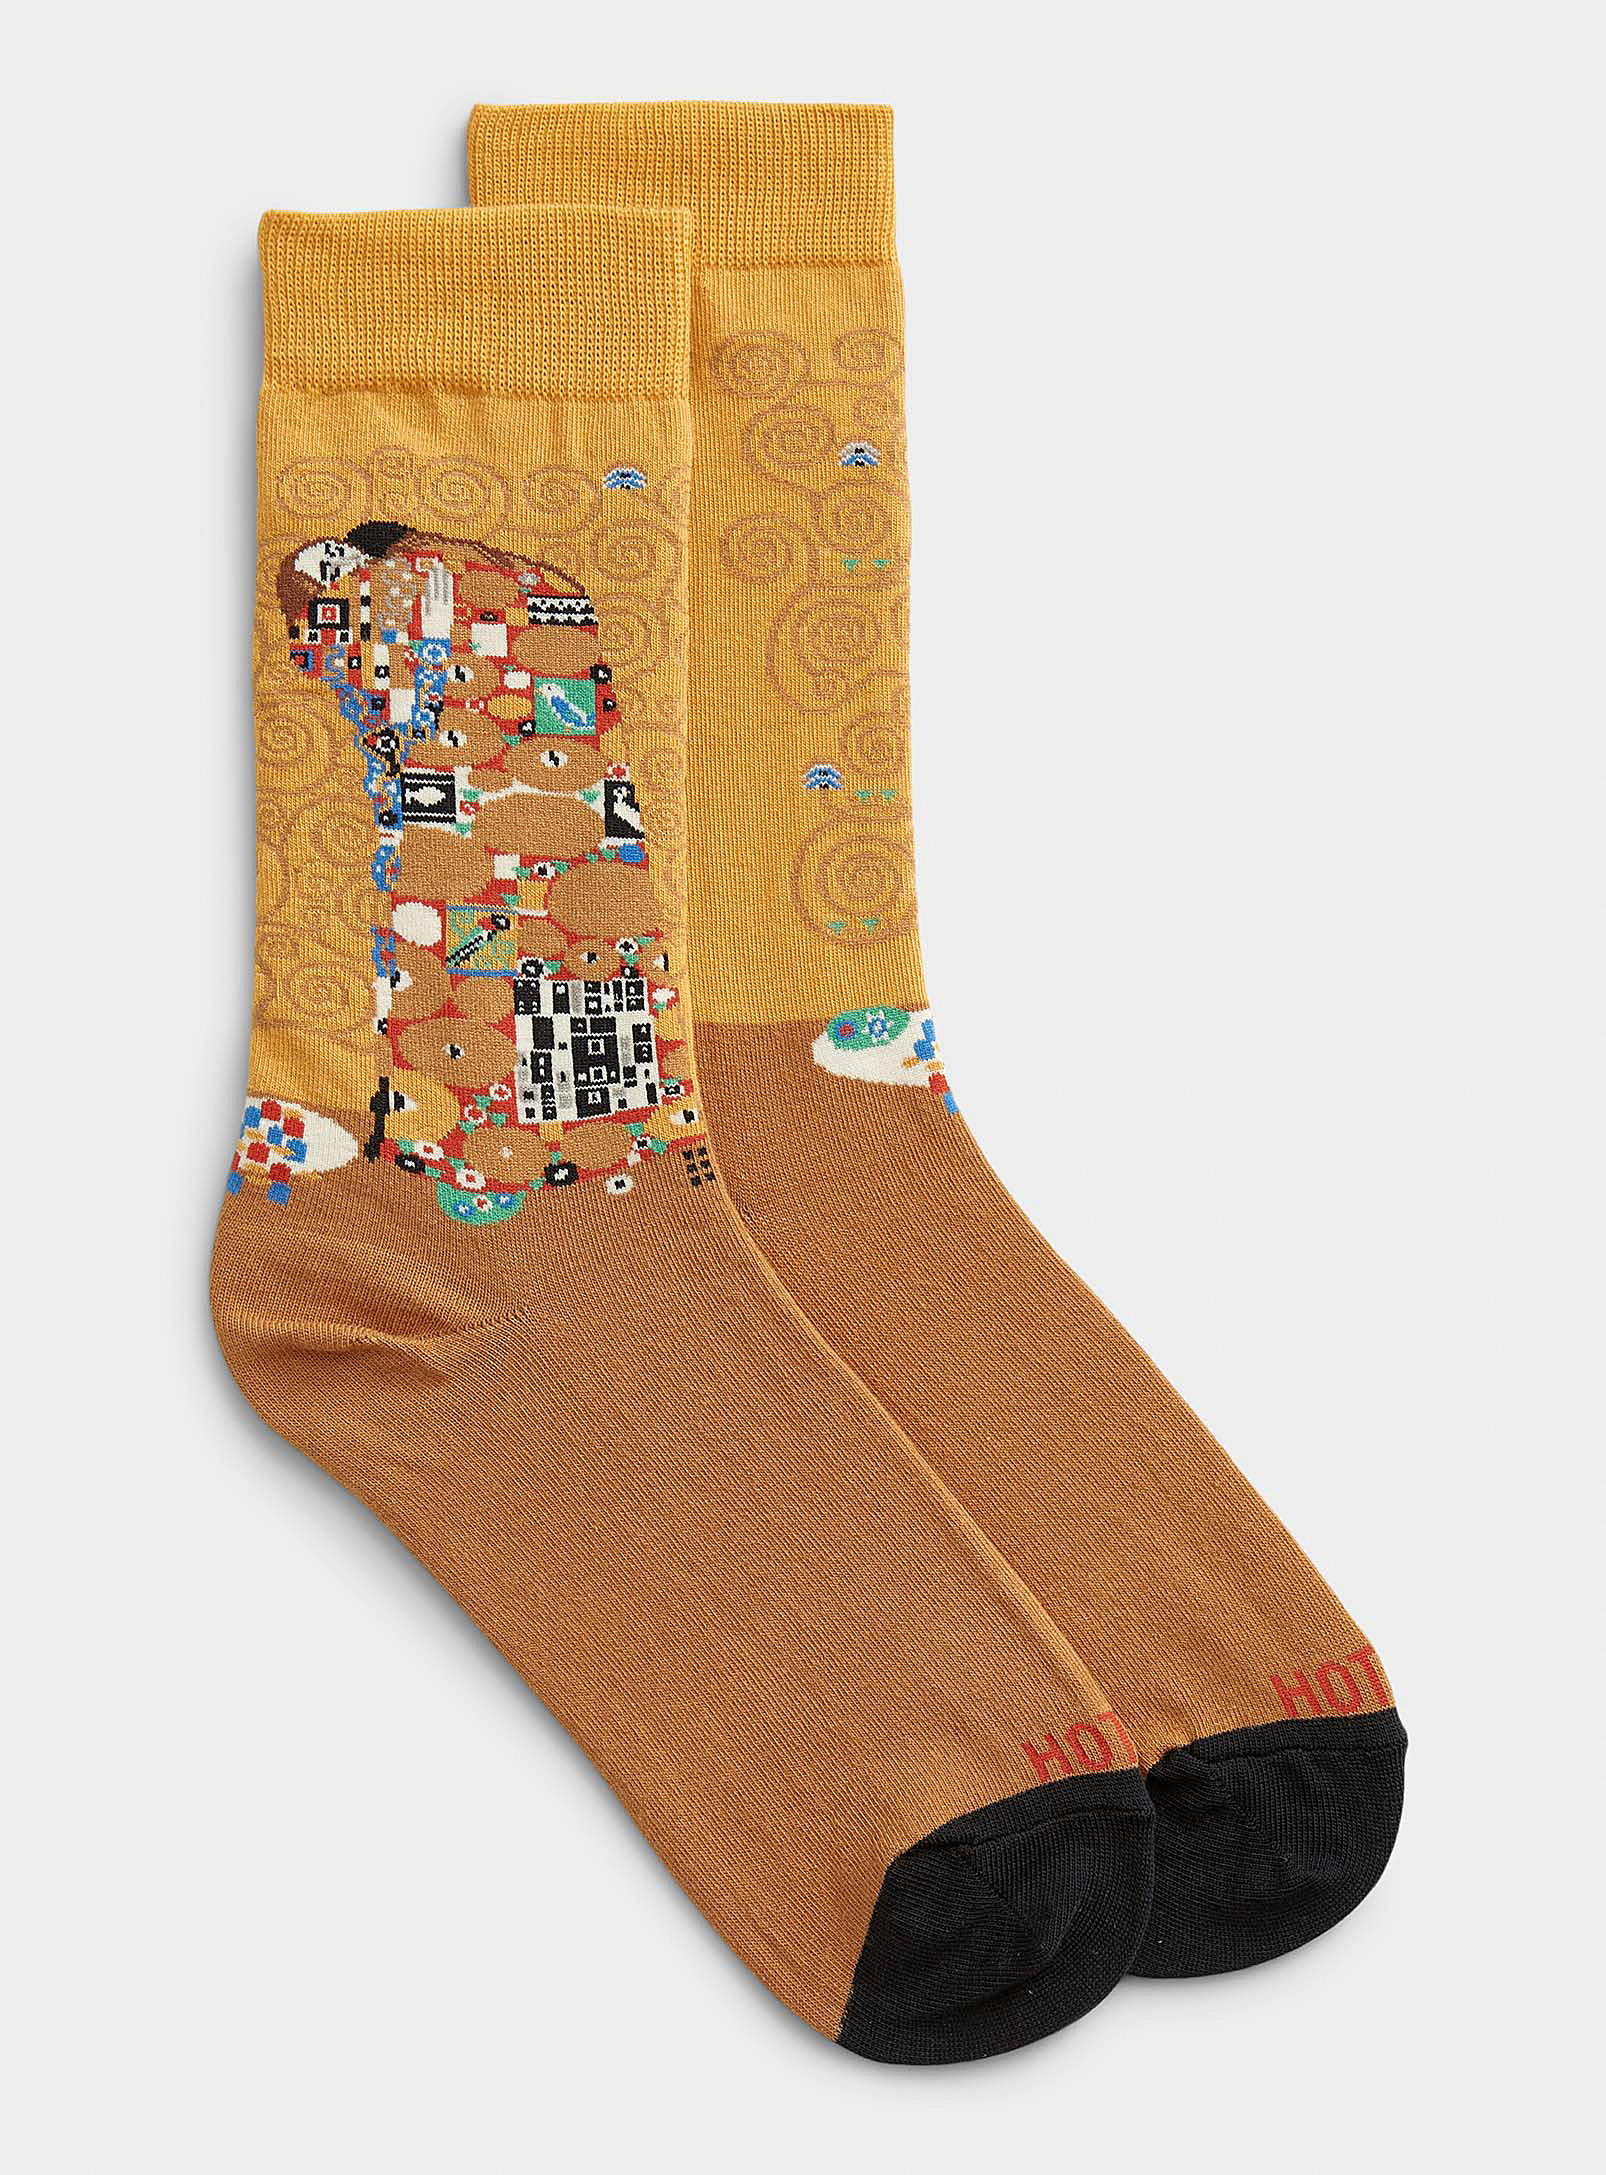 Hot Sox - La chaussette Fulfillment de Gustave Klimt